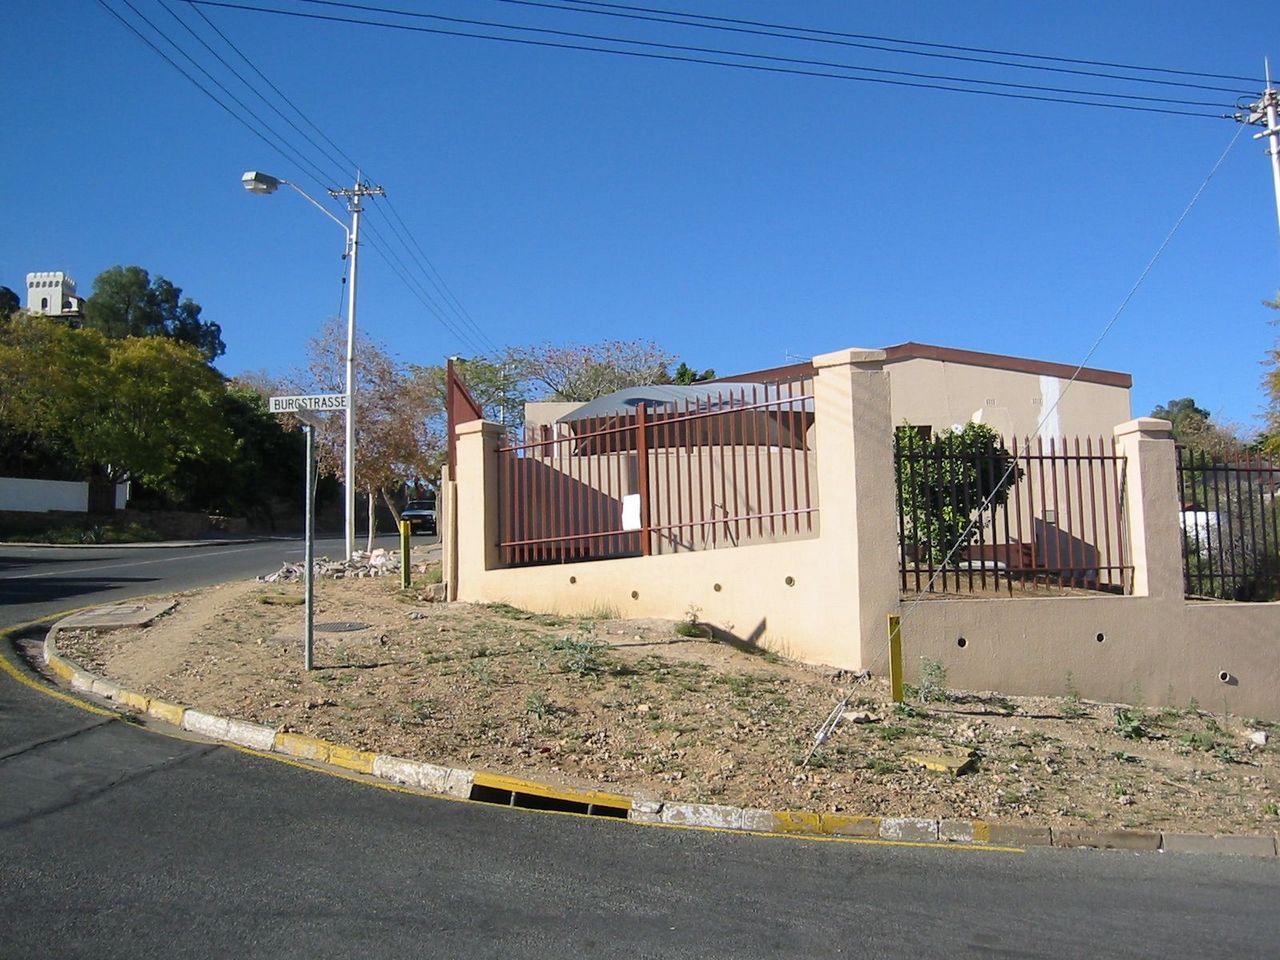 Klein Windhoek suburb, Windhoek, Namibia